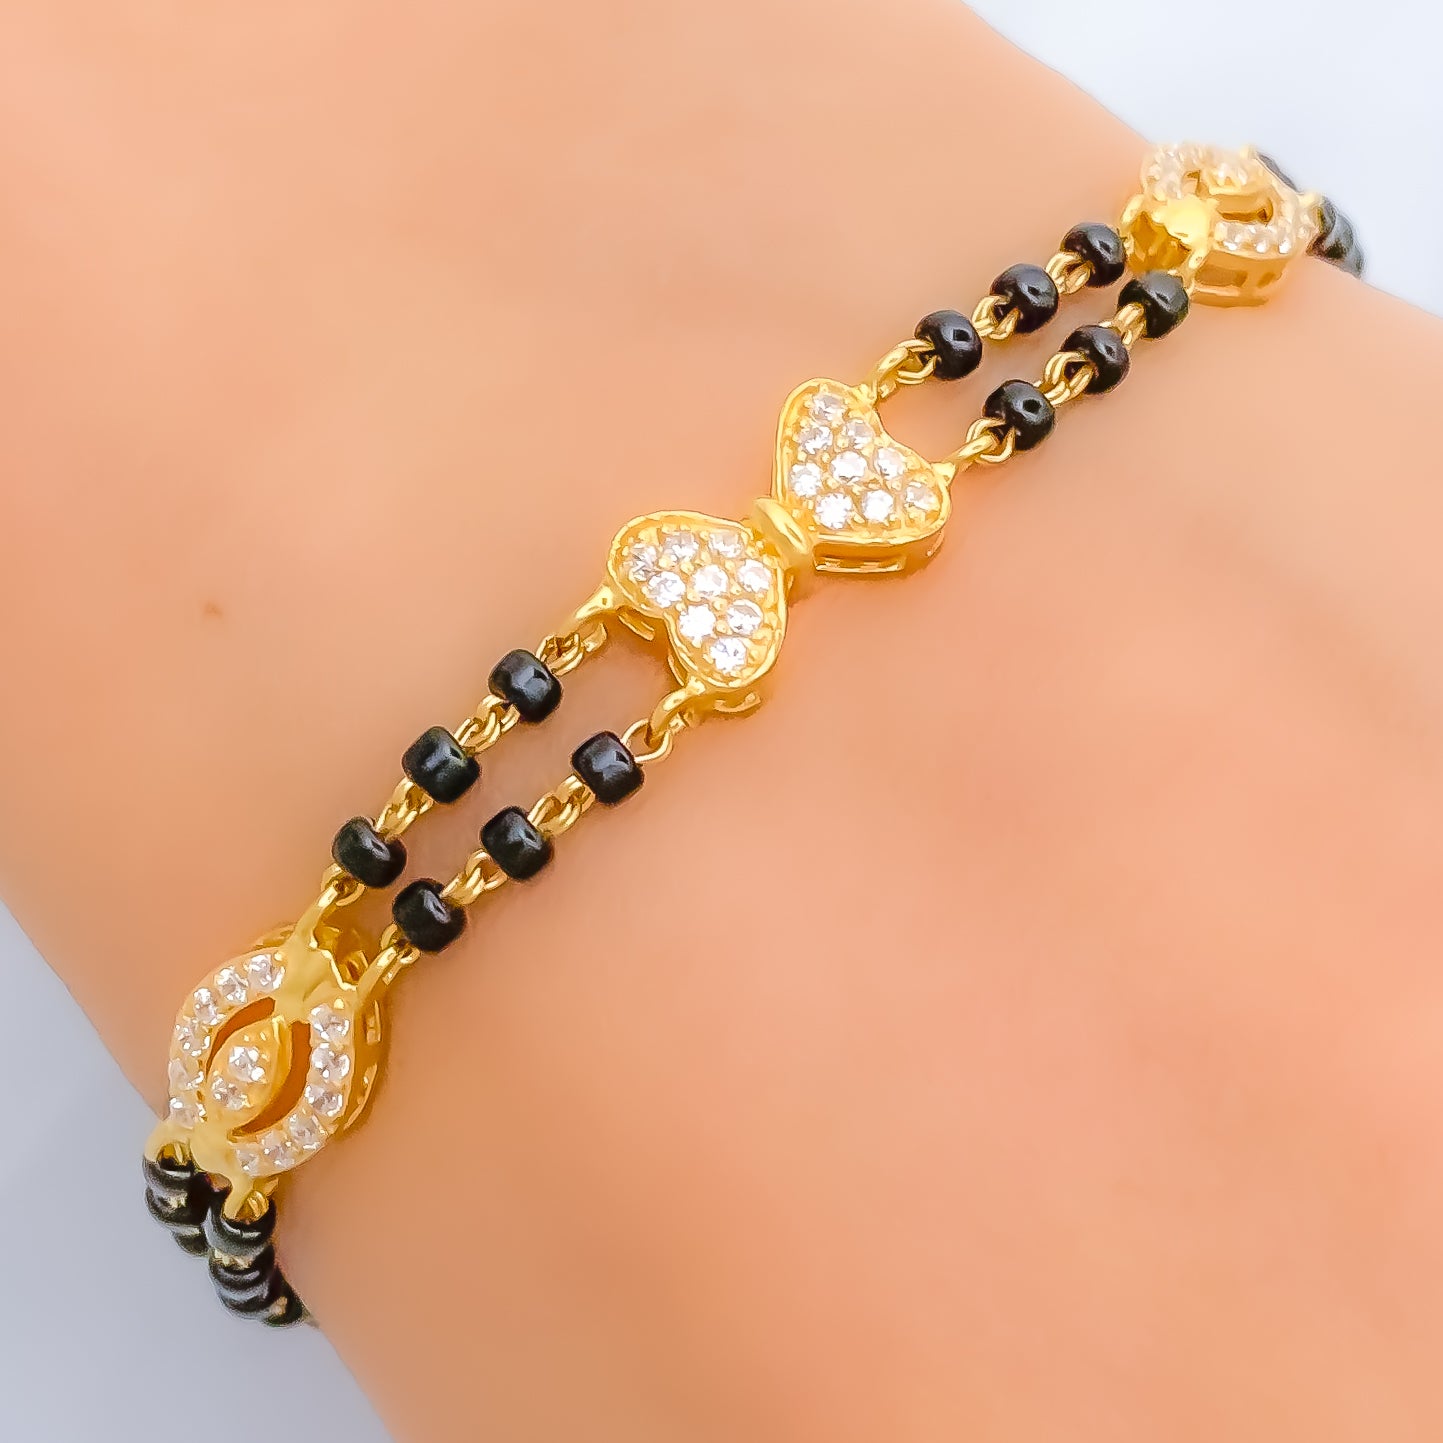 Discover 131+ 22k gold black beads earrings best